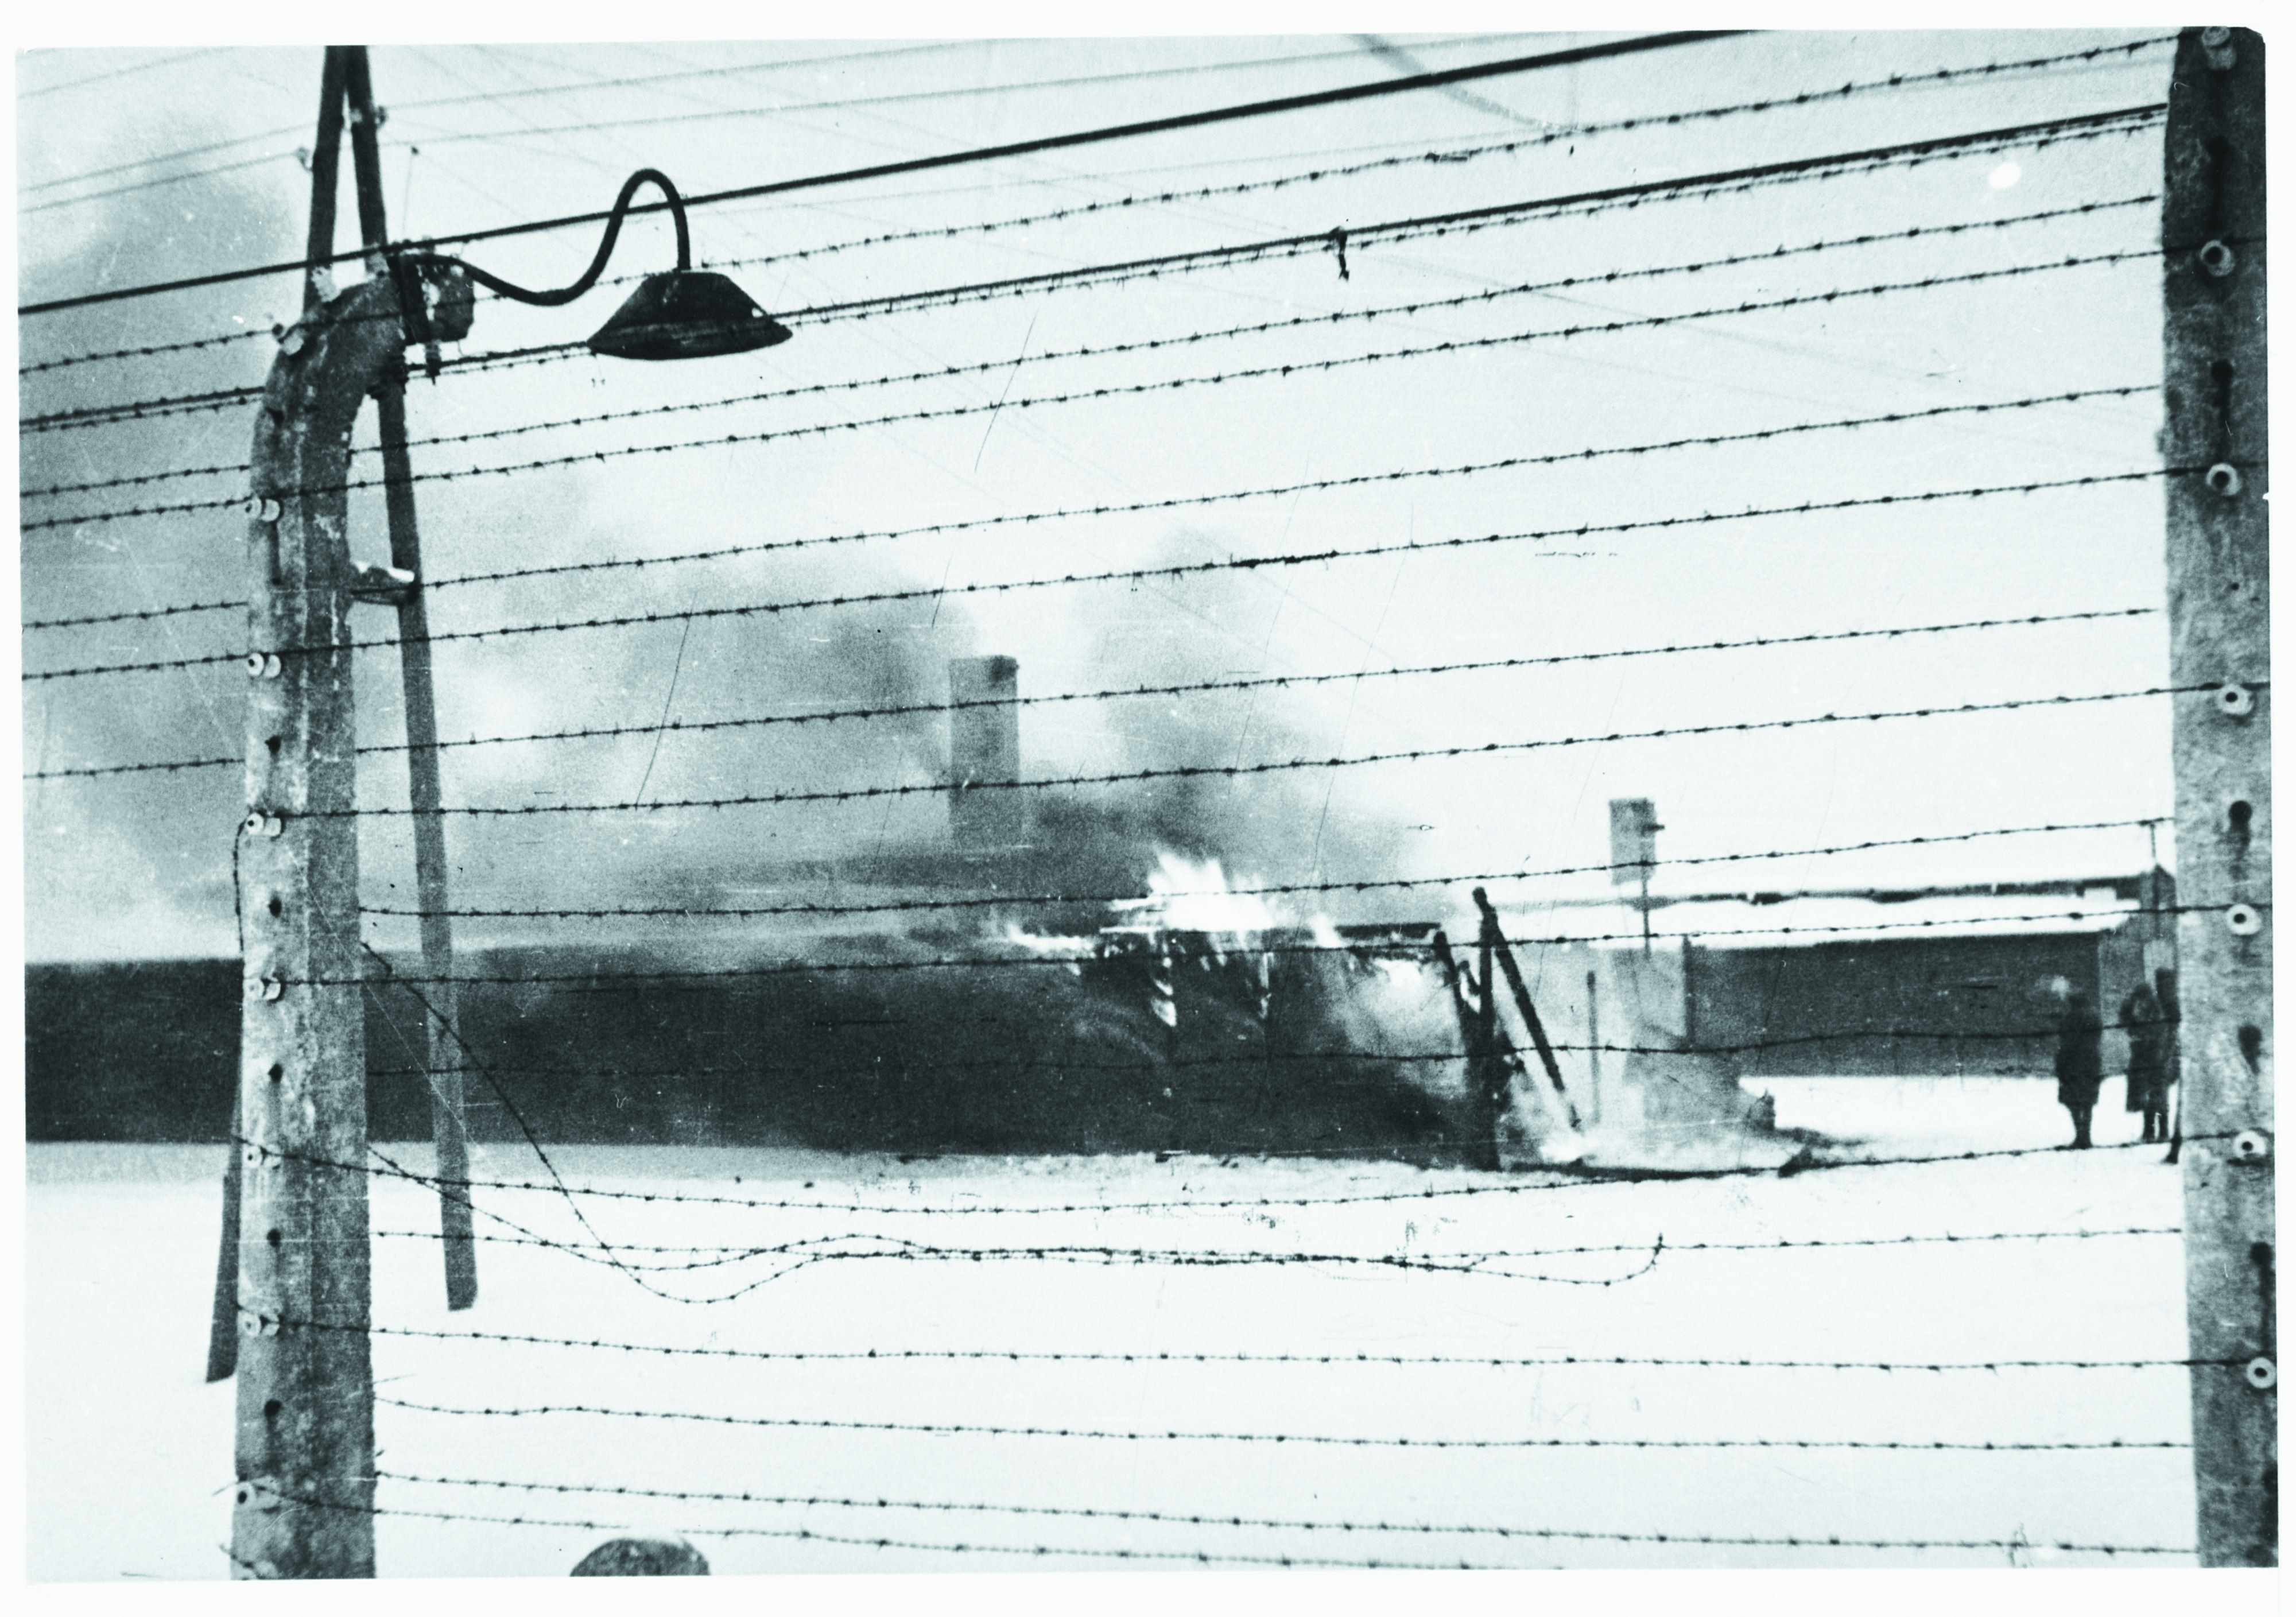 Birkenau, gennaio 1945: per far sparire le tracce dell’assassinio di massa, prima di abbandonare il campo le SS incendiano i magazzini (Effektenlager Kanada II”) che contengono i vestiti e gli oggetti degli ebrei uccisi